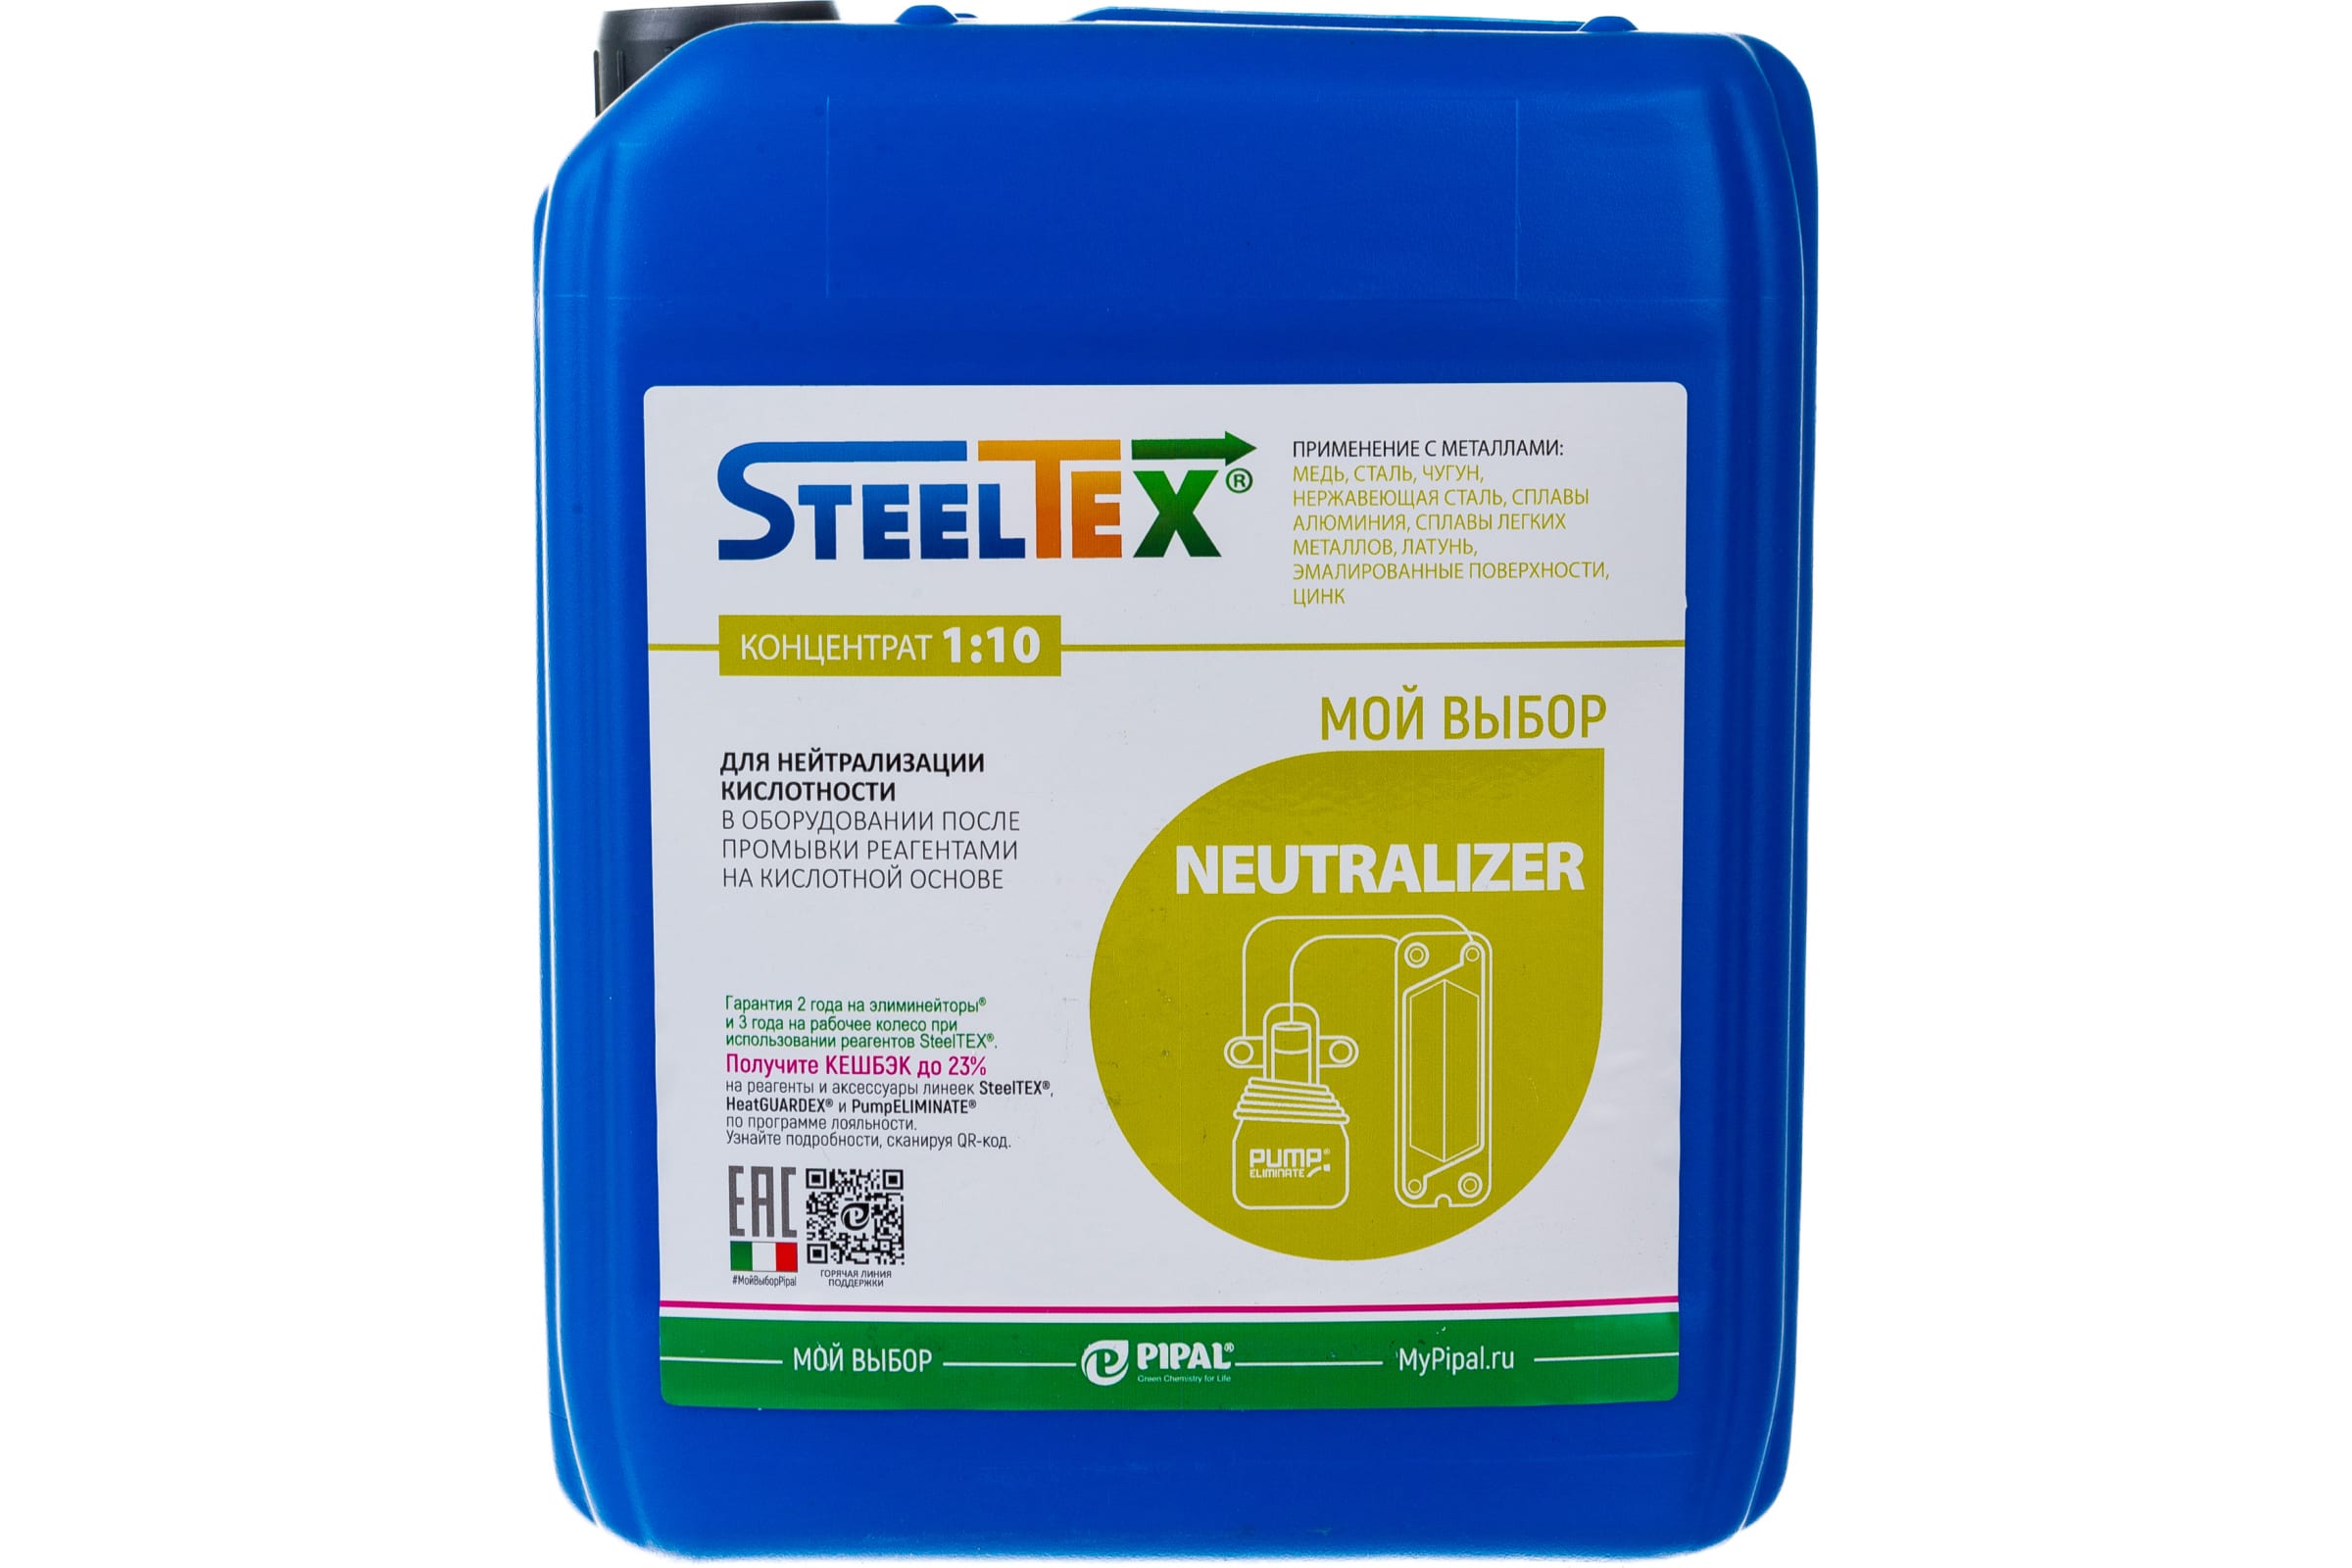 фото Steeltex neutralizer  реагент для нейтрализации остаточной кислотности 2022020005